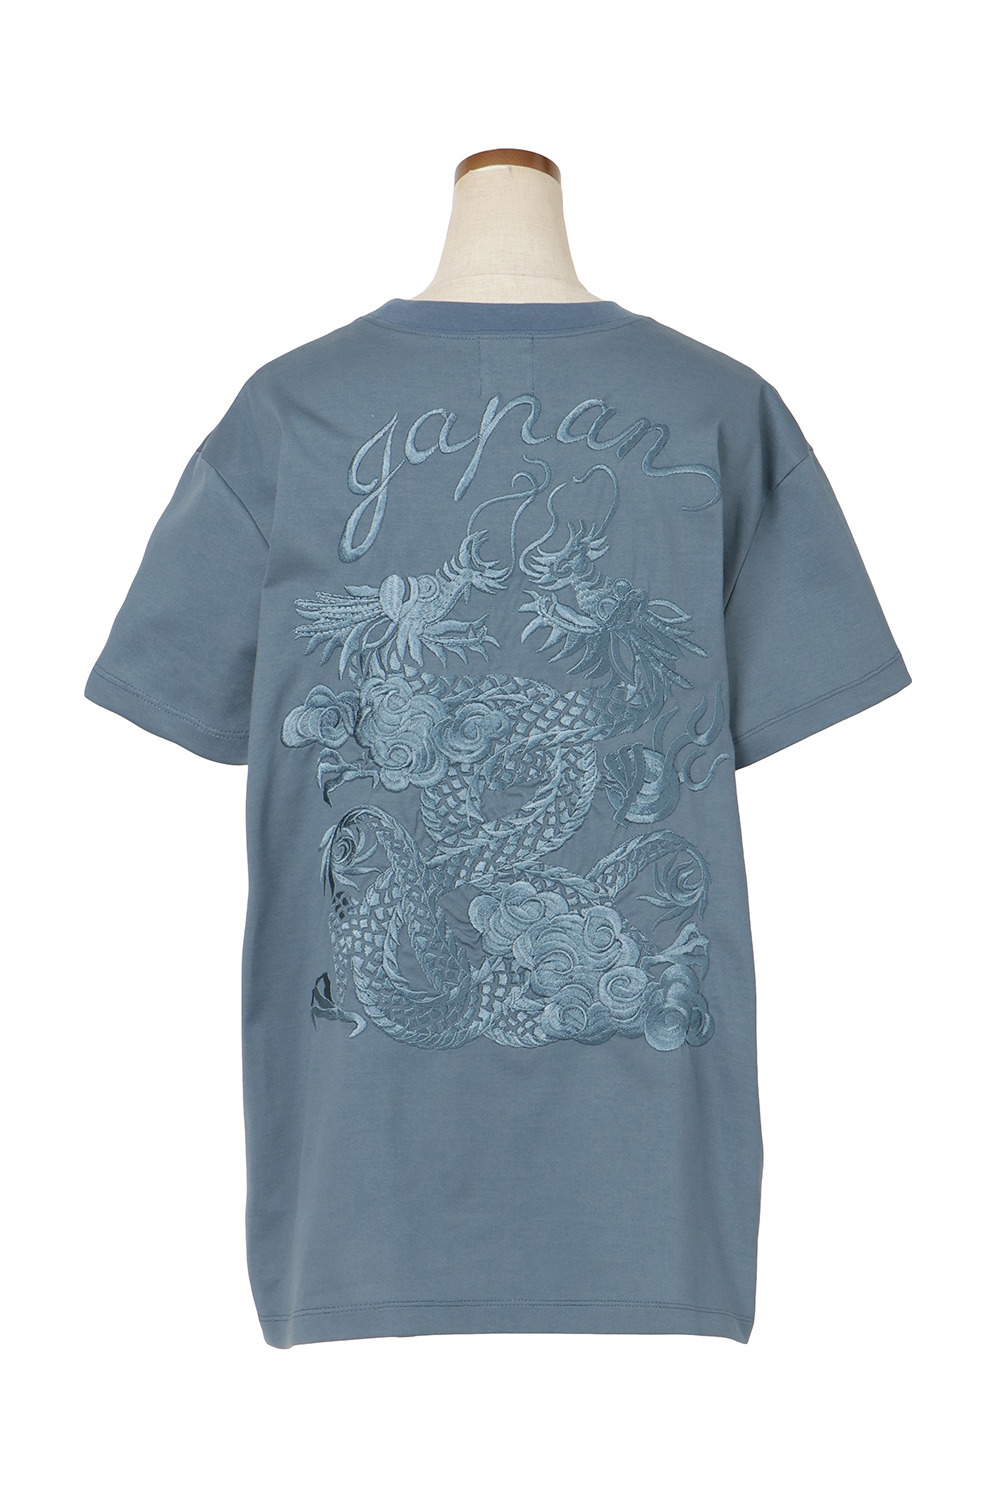 Dragon Embroidery Tシャツ 詳細画像 ブルー